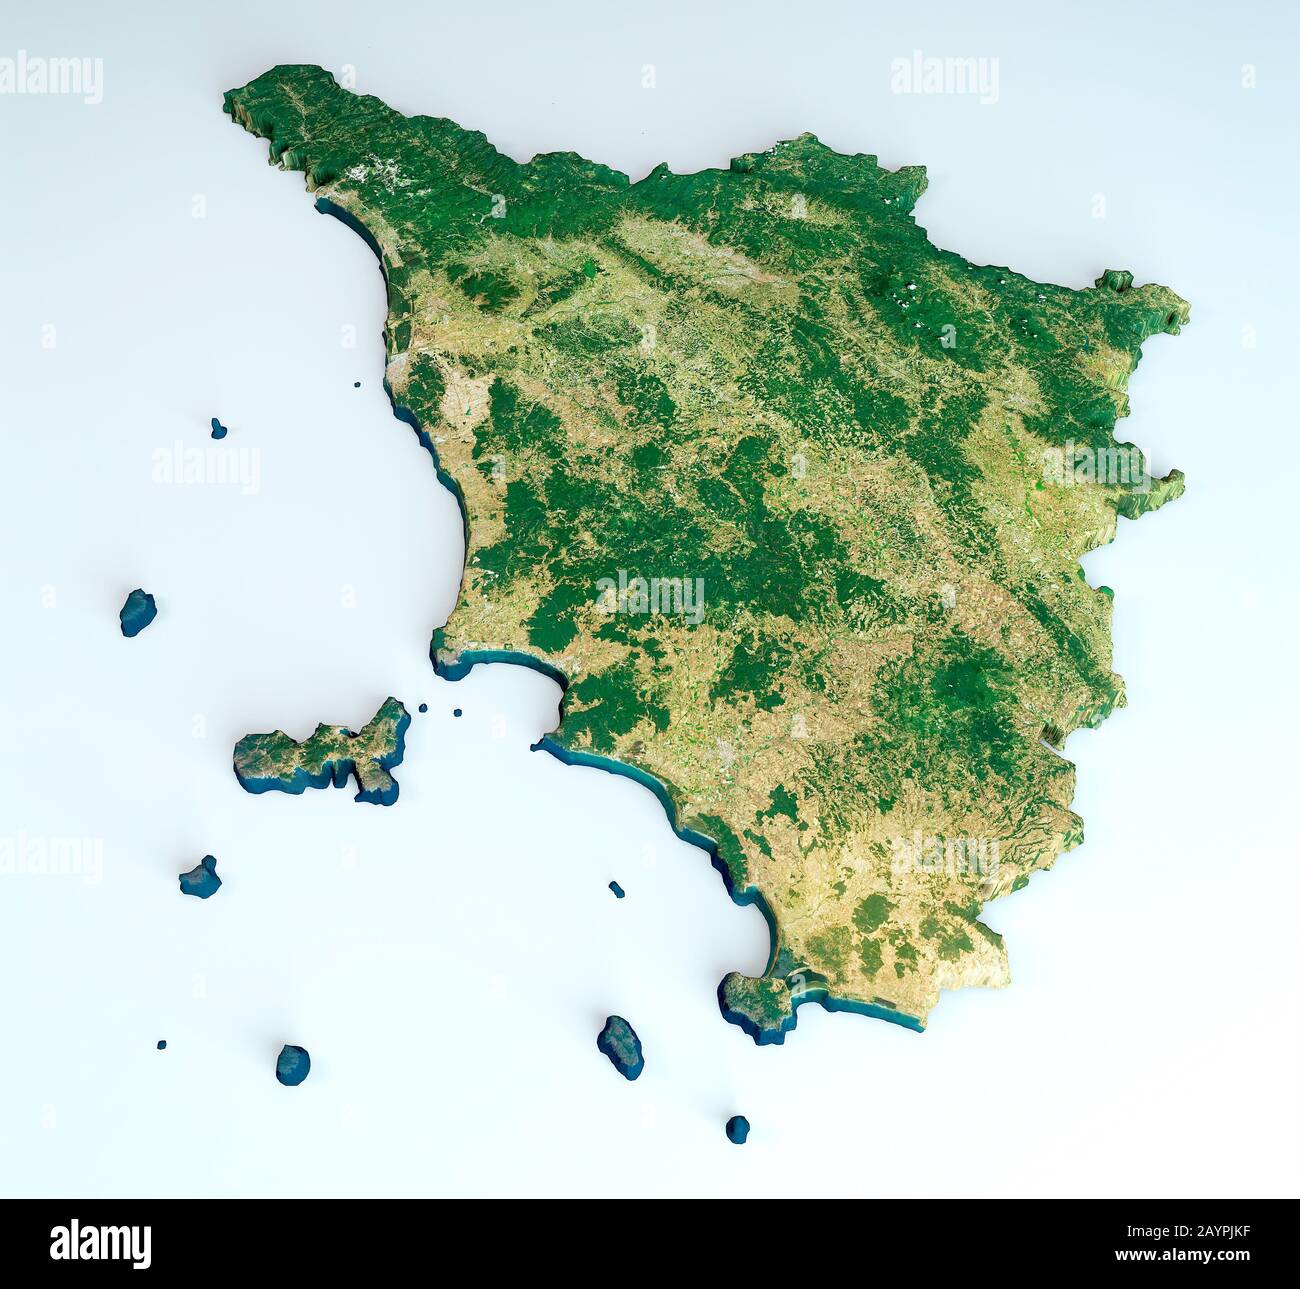 Satellitenansicht der Region Toskana. Italien. 3D-Rendering. Physische Karte von Toscana, Ebenen, Bergen, Seen, Gebirgszug der Apenninen Stockfoto